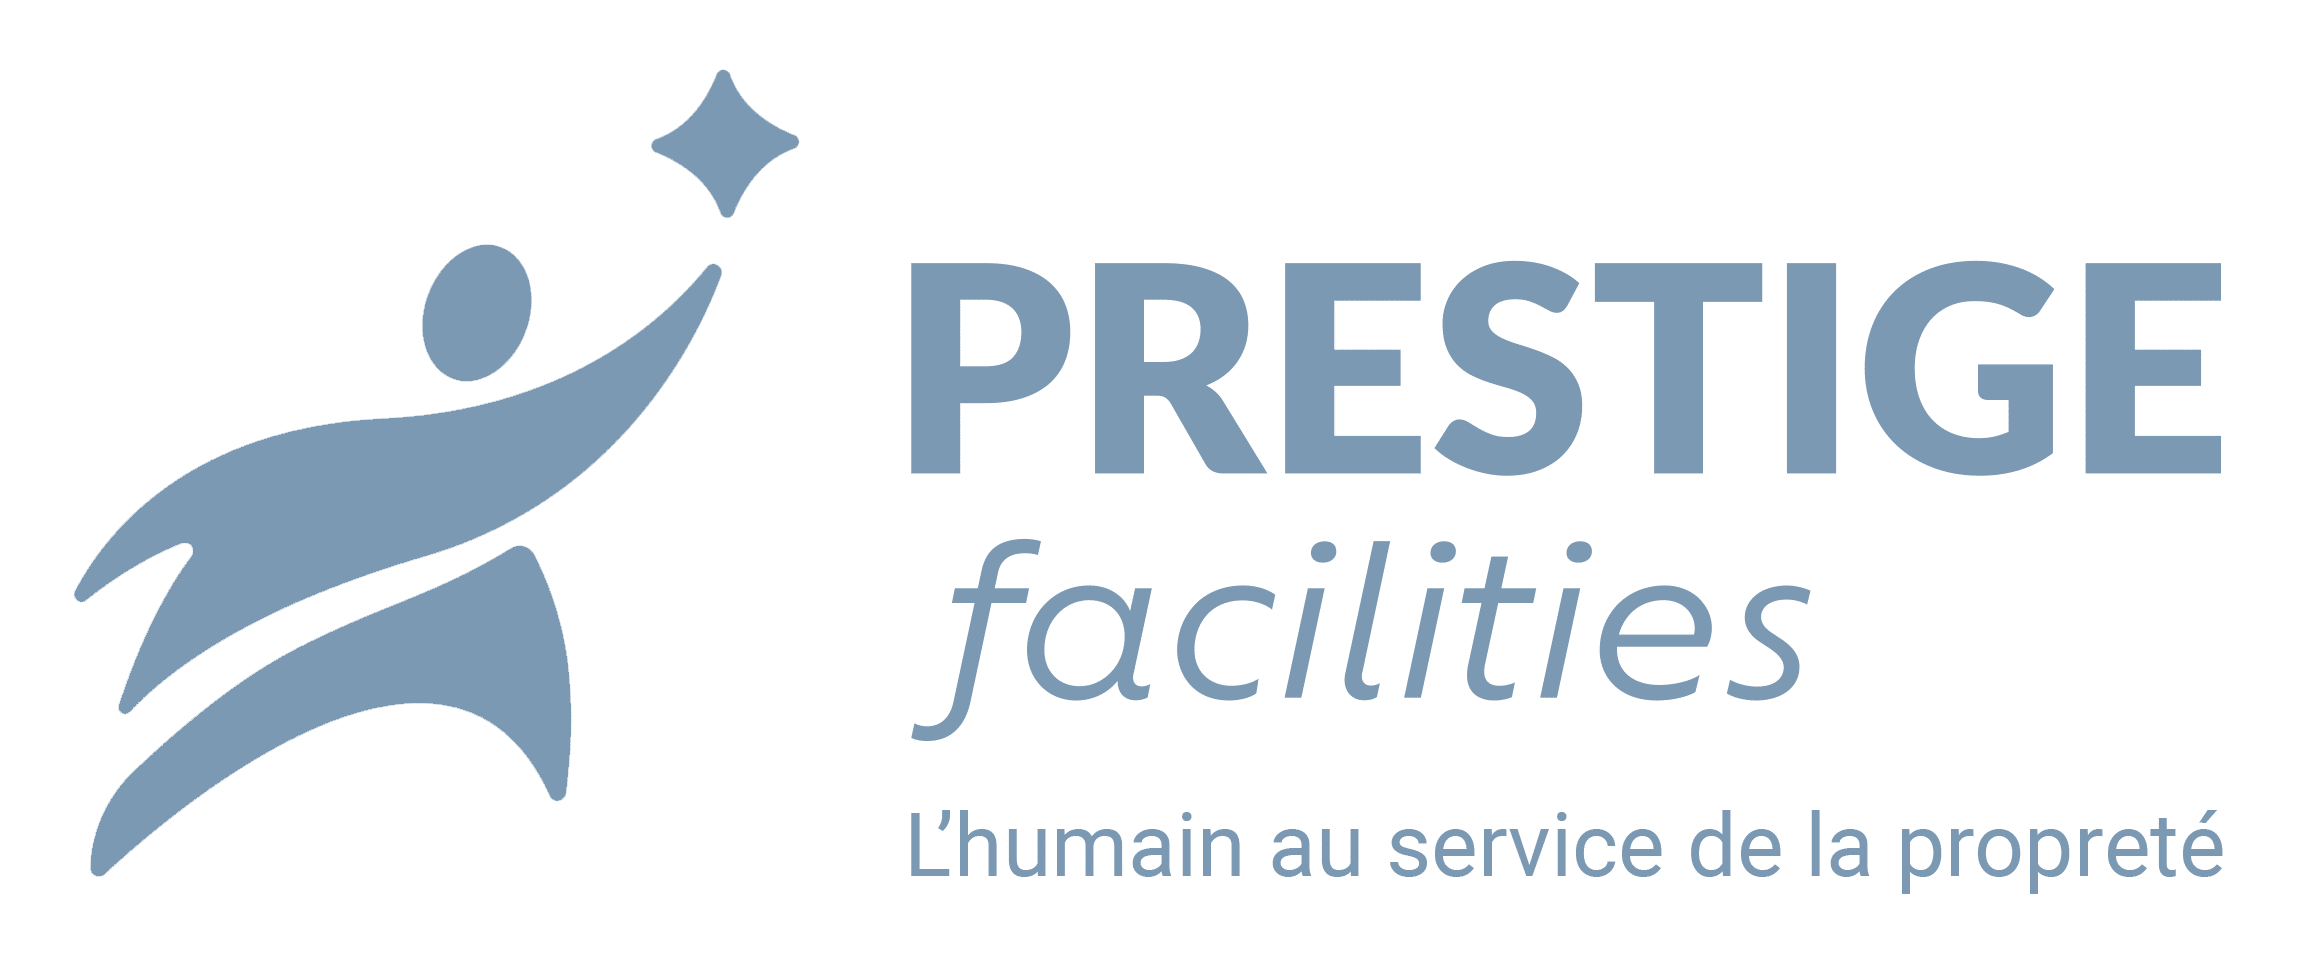 prestige-facilities-logo